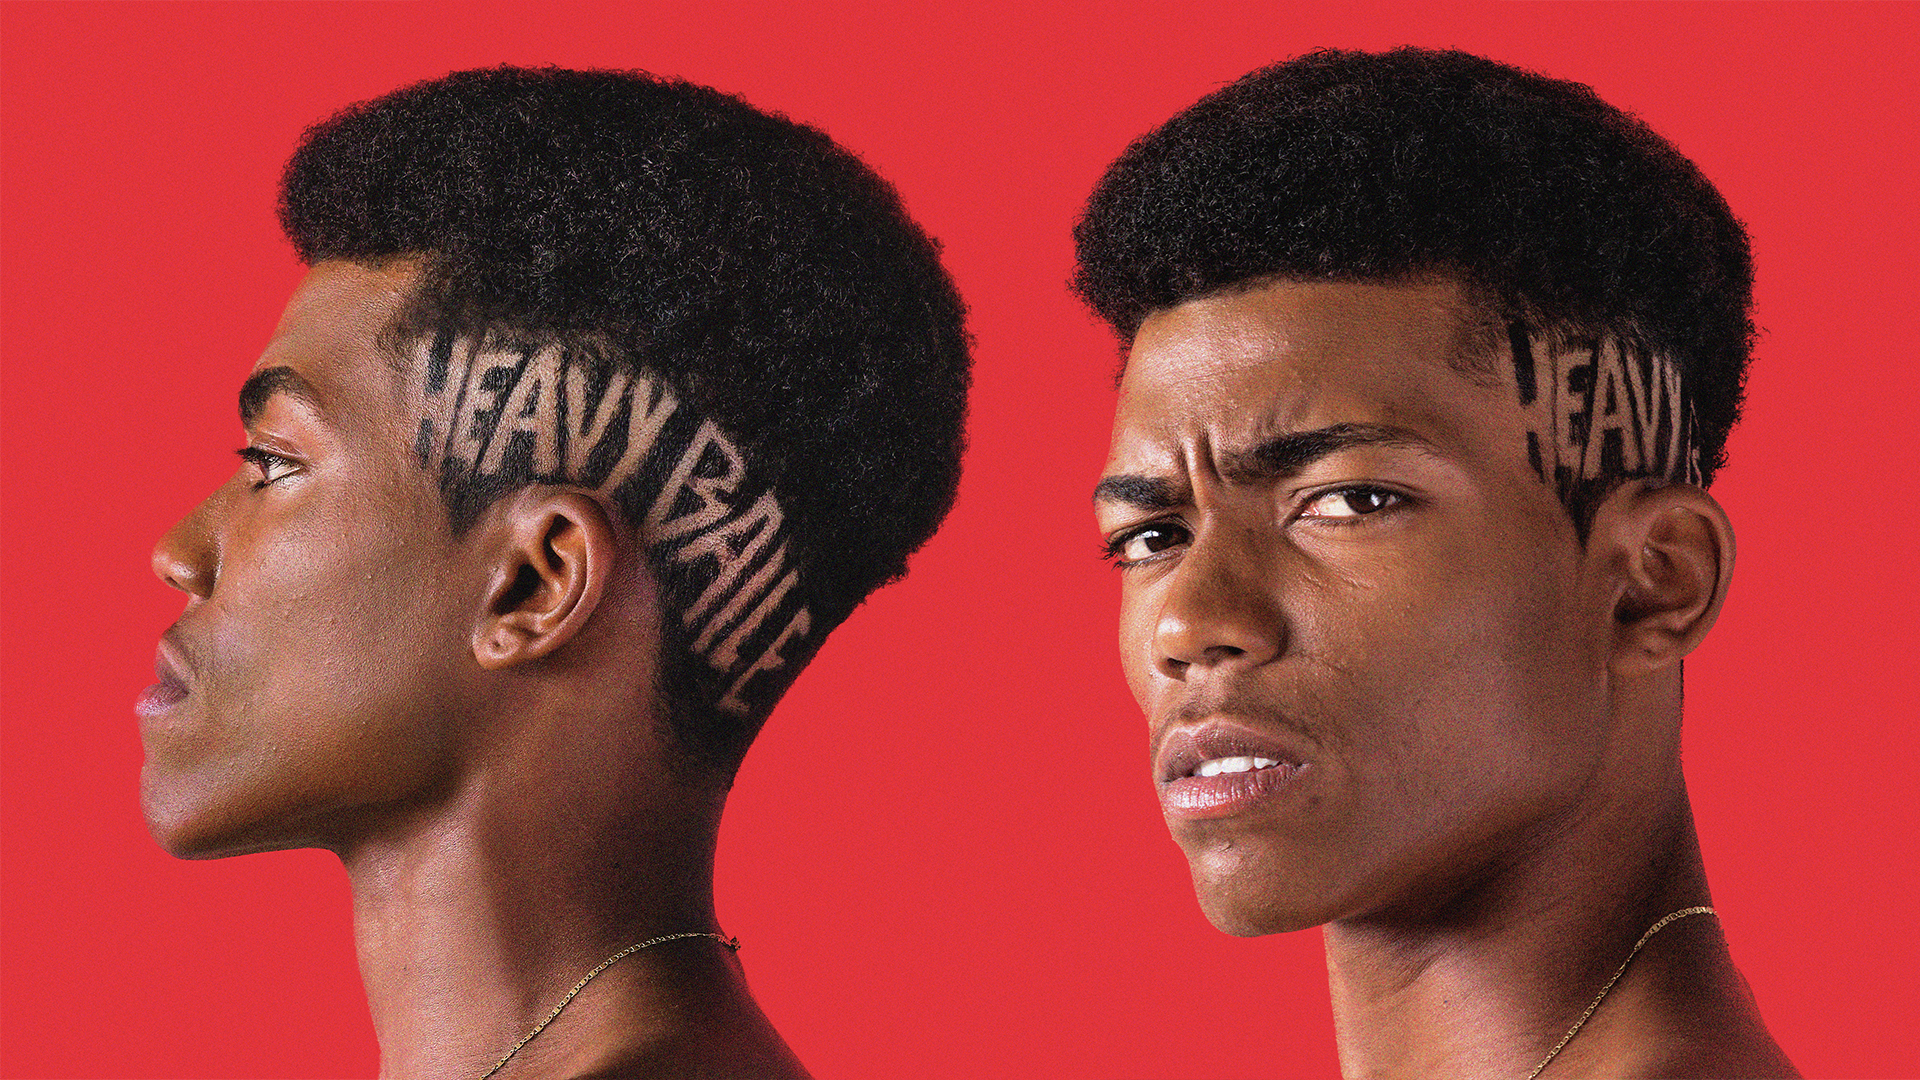 fotos da capa do primeiro álbum de estúdio do grupo heavy baile. fundo vermelho com heavy baile escrito no corte de cabelo de um menino jovem negro.